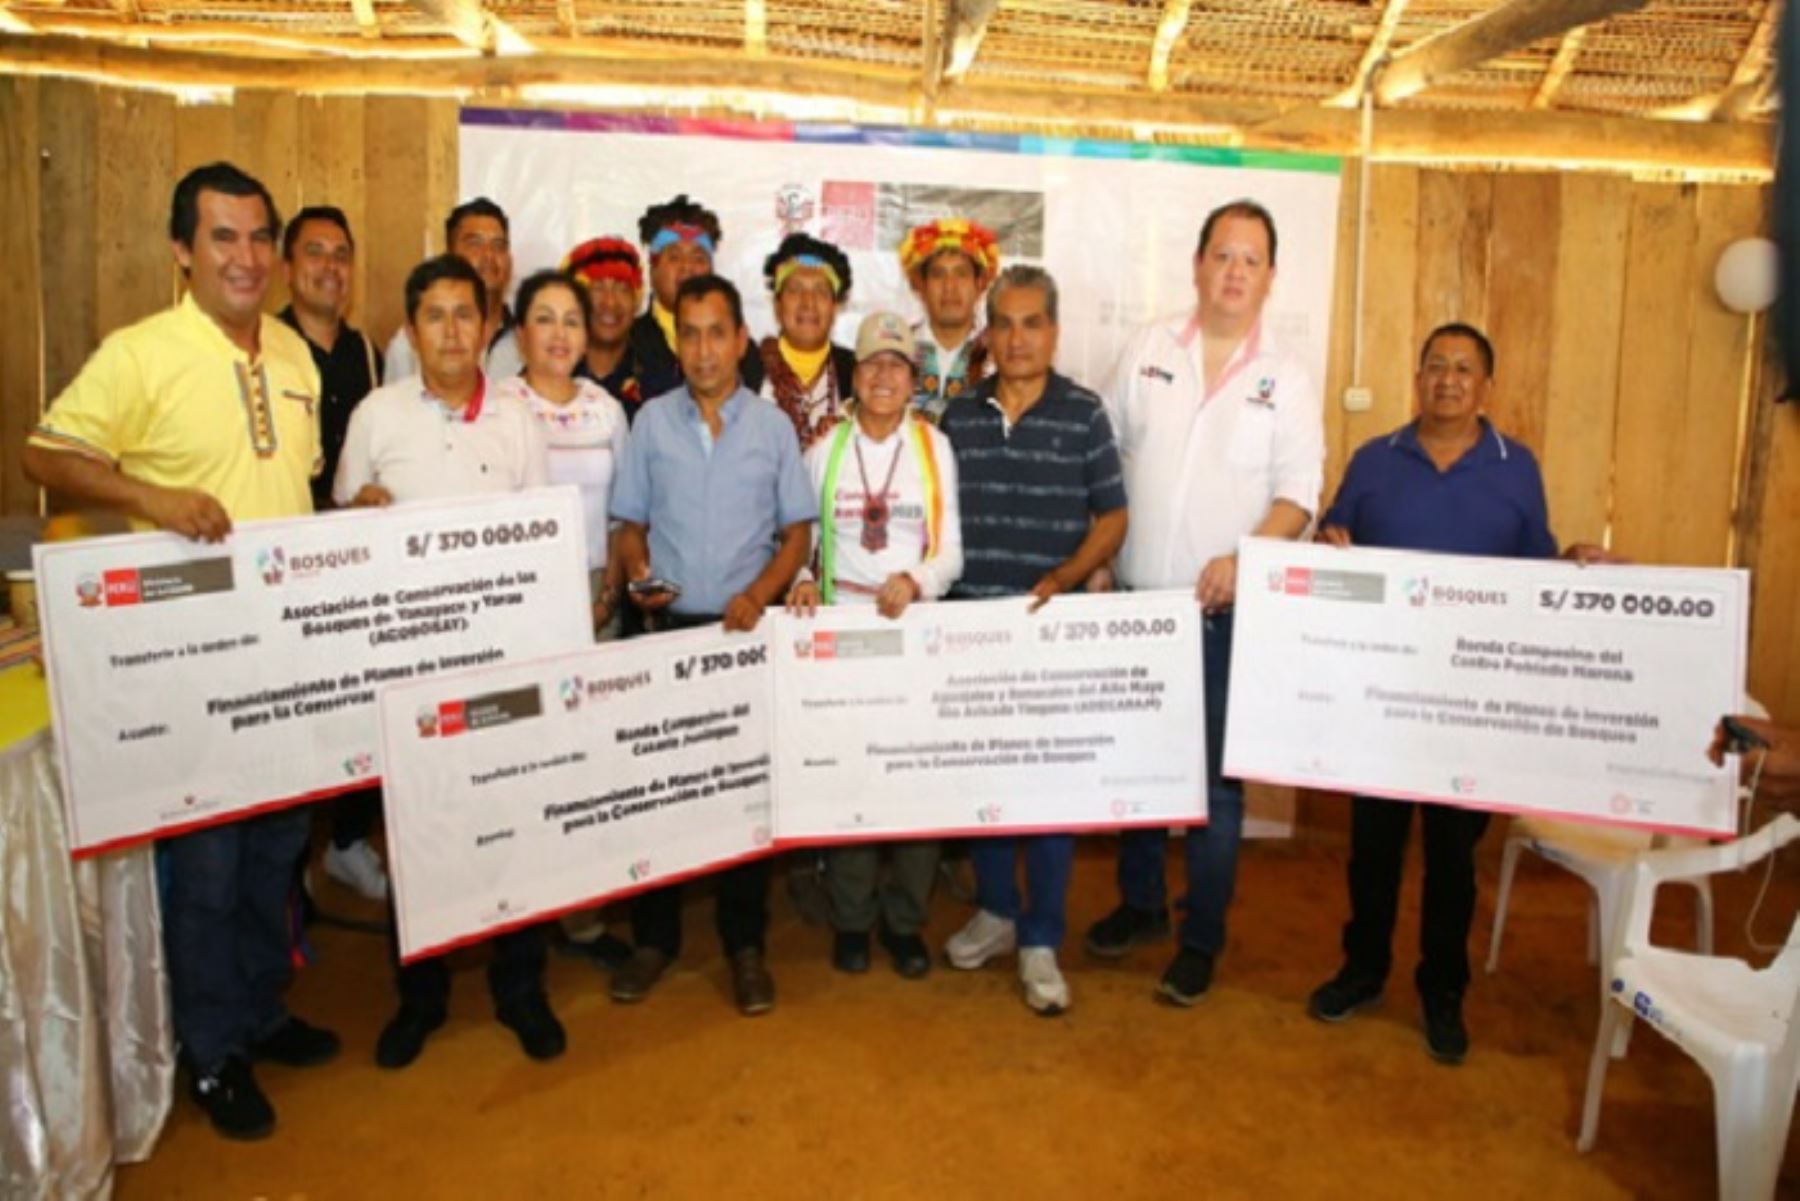 Asociaciones de productores y rondas campesinas beneficiadas impulsarán emprendimientos comerciales libres de deforestación, vinculados al turismo y la producción del café y la pitahaya.